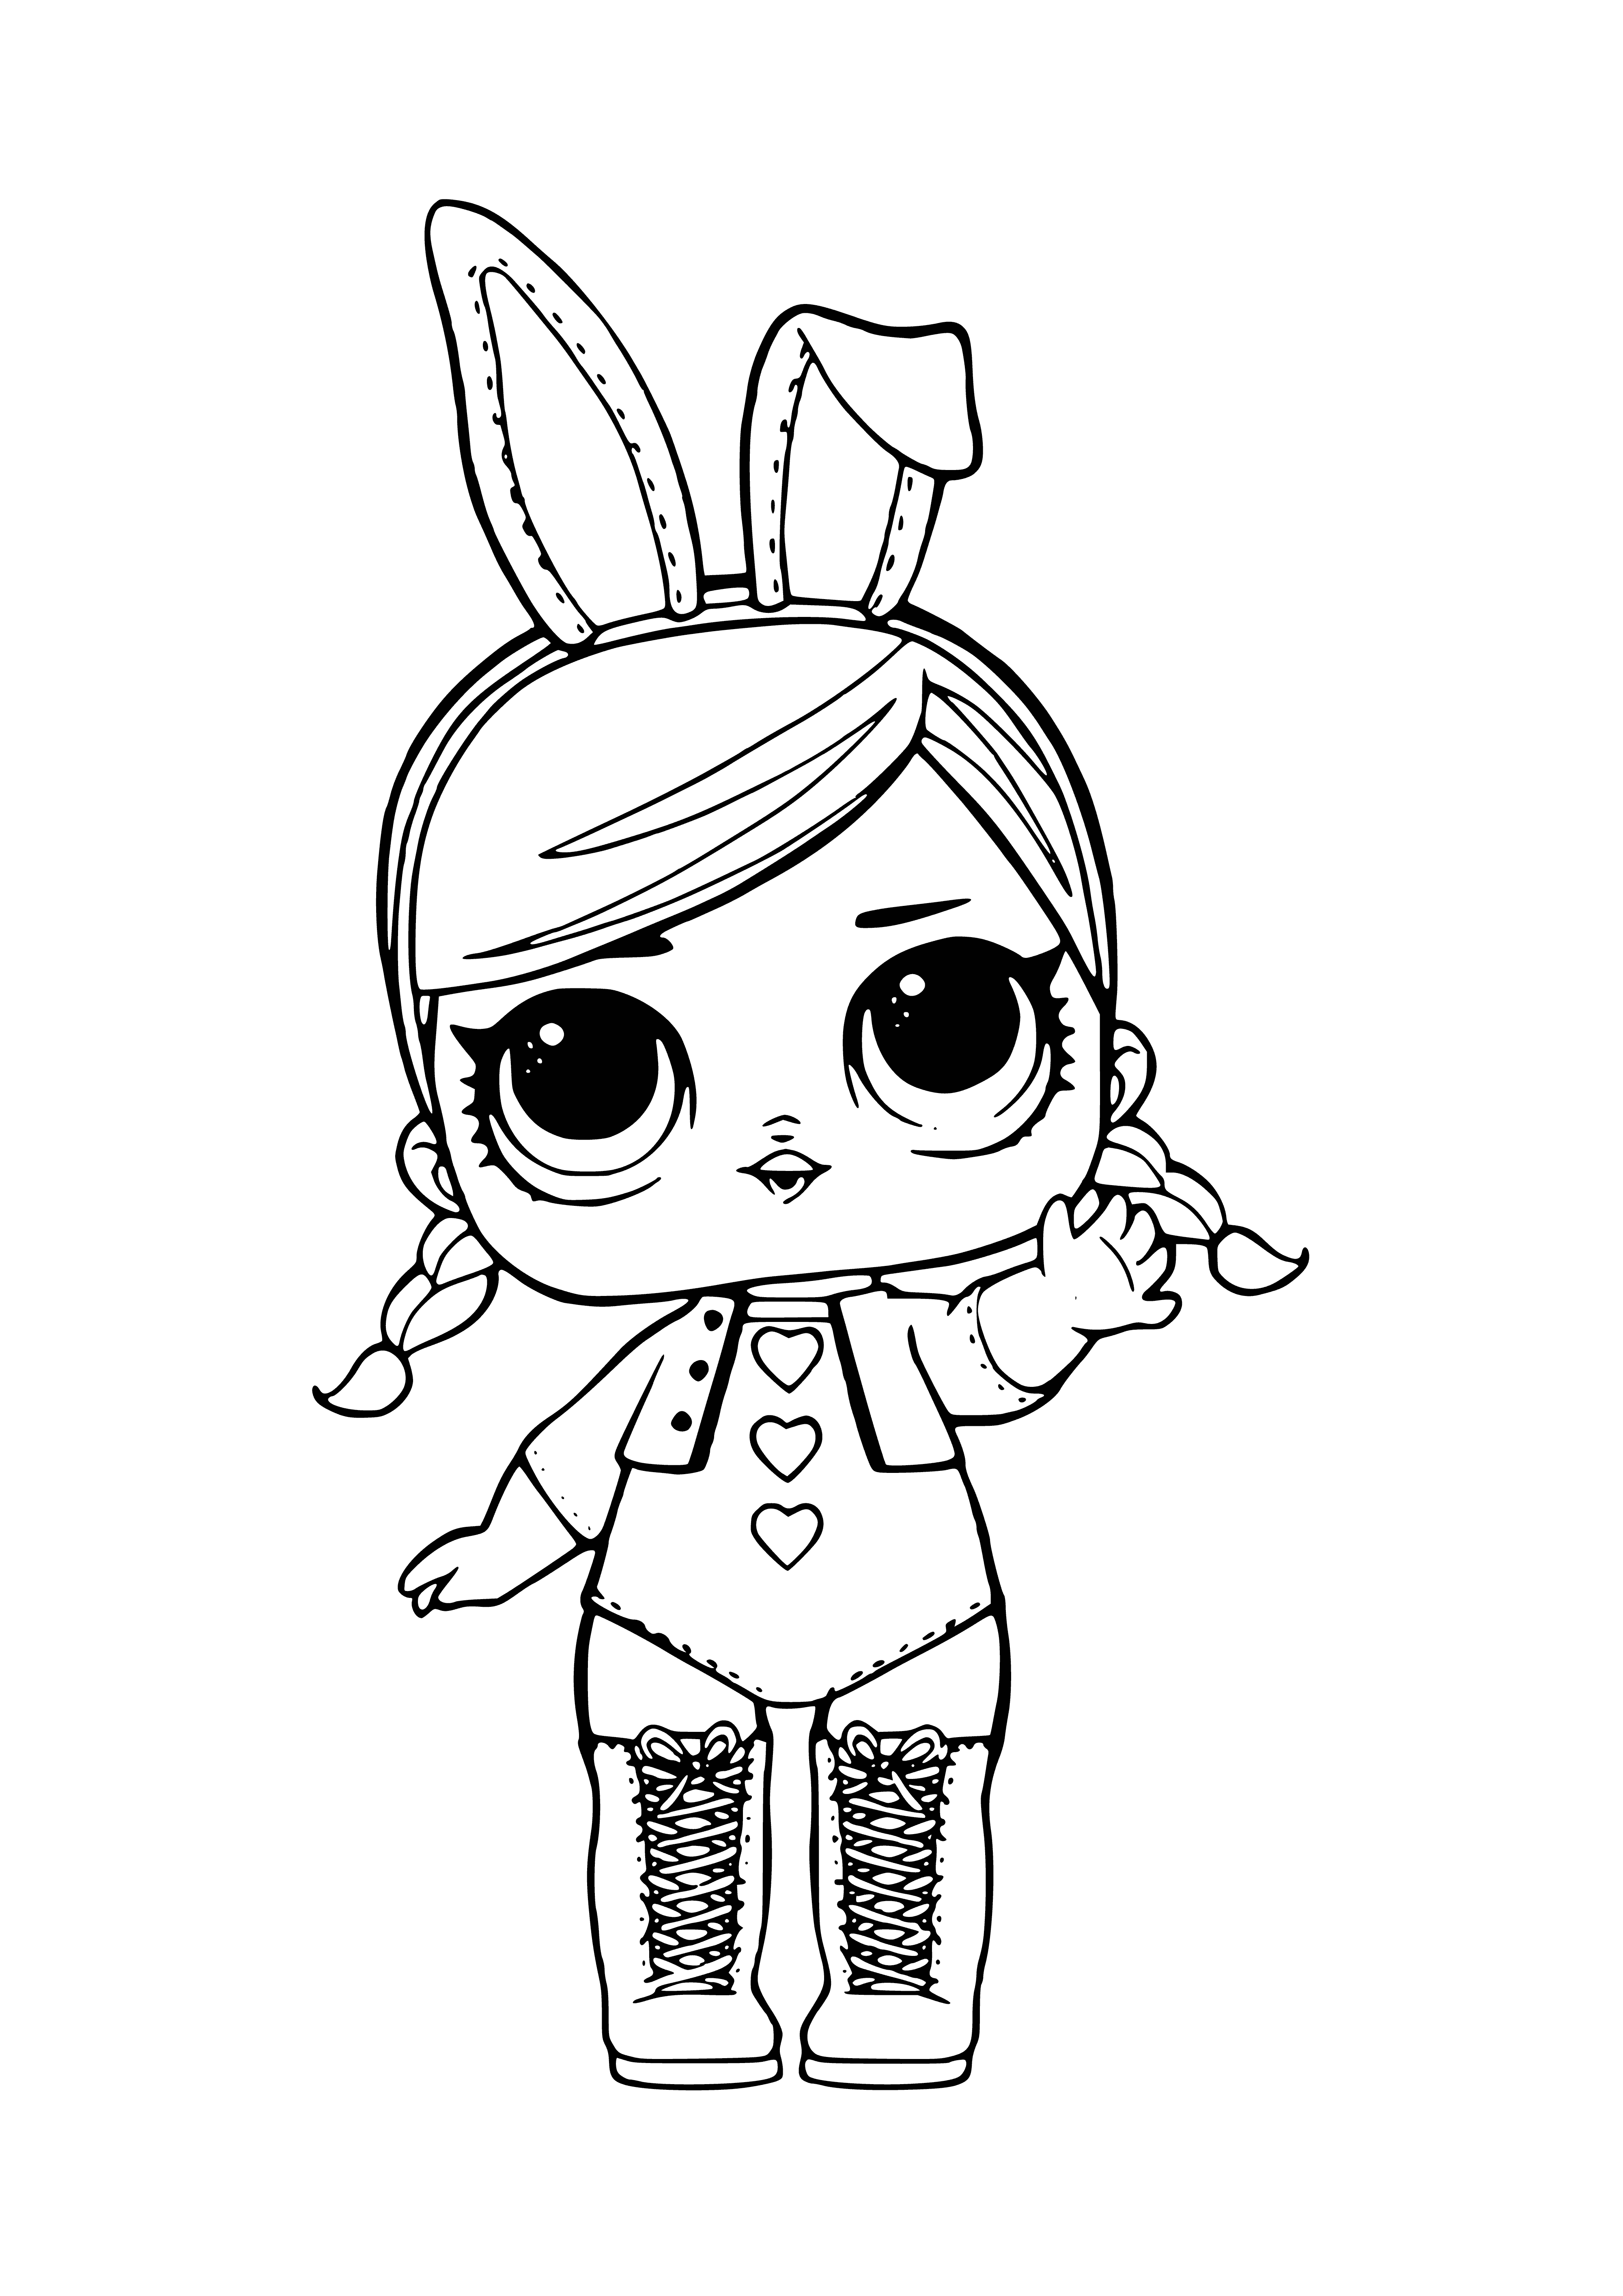 LOL Hops (Bunny Hops) aflevering 2 kleurplaat